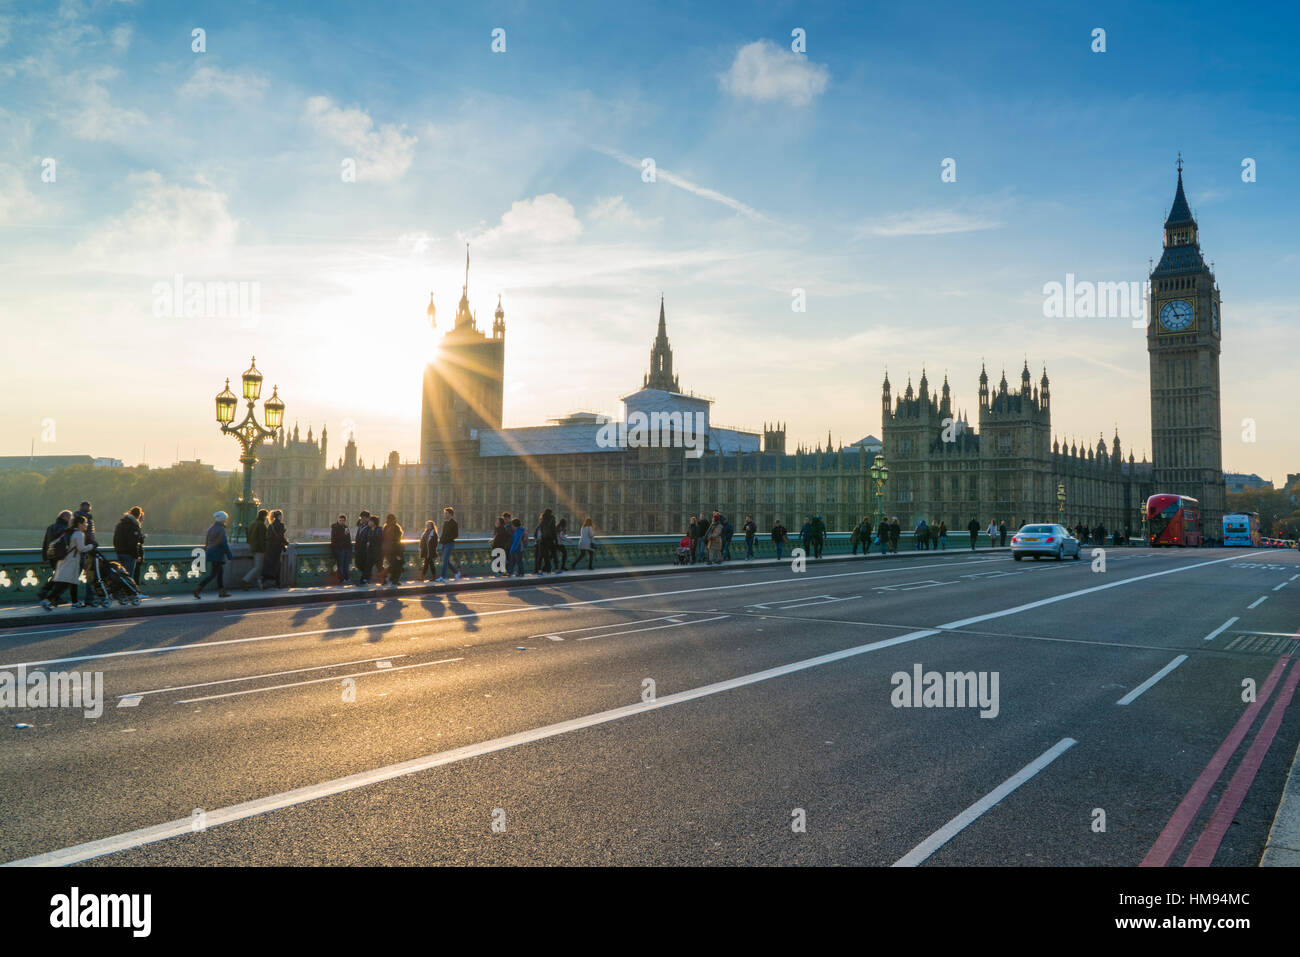 Piétons sur le pont de Westminster avec les Chambres du Parlement et Big Ben au coucher du soleil, Londres, Angleterre, Royaume-Uni Banque D'Images